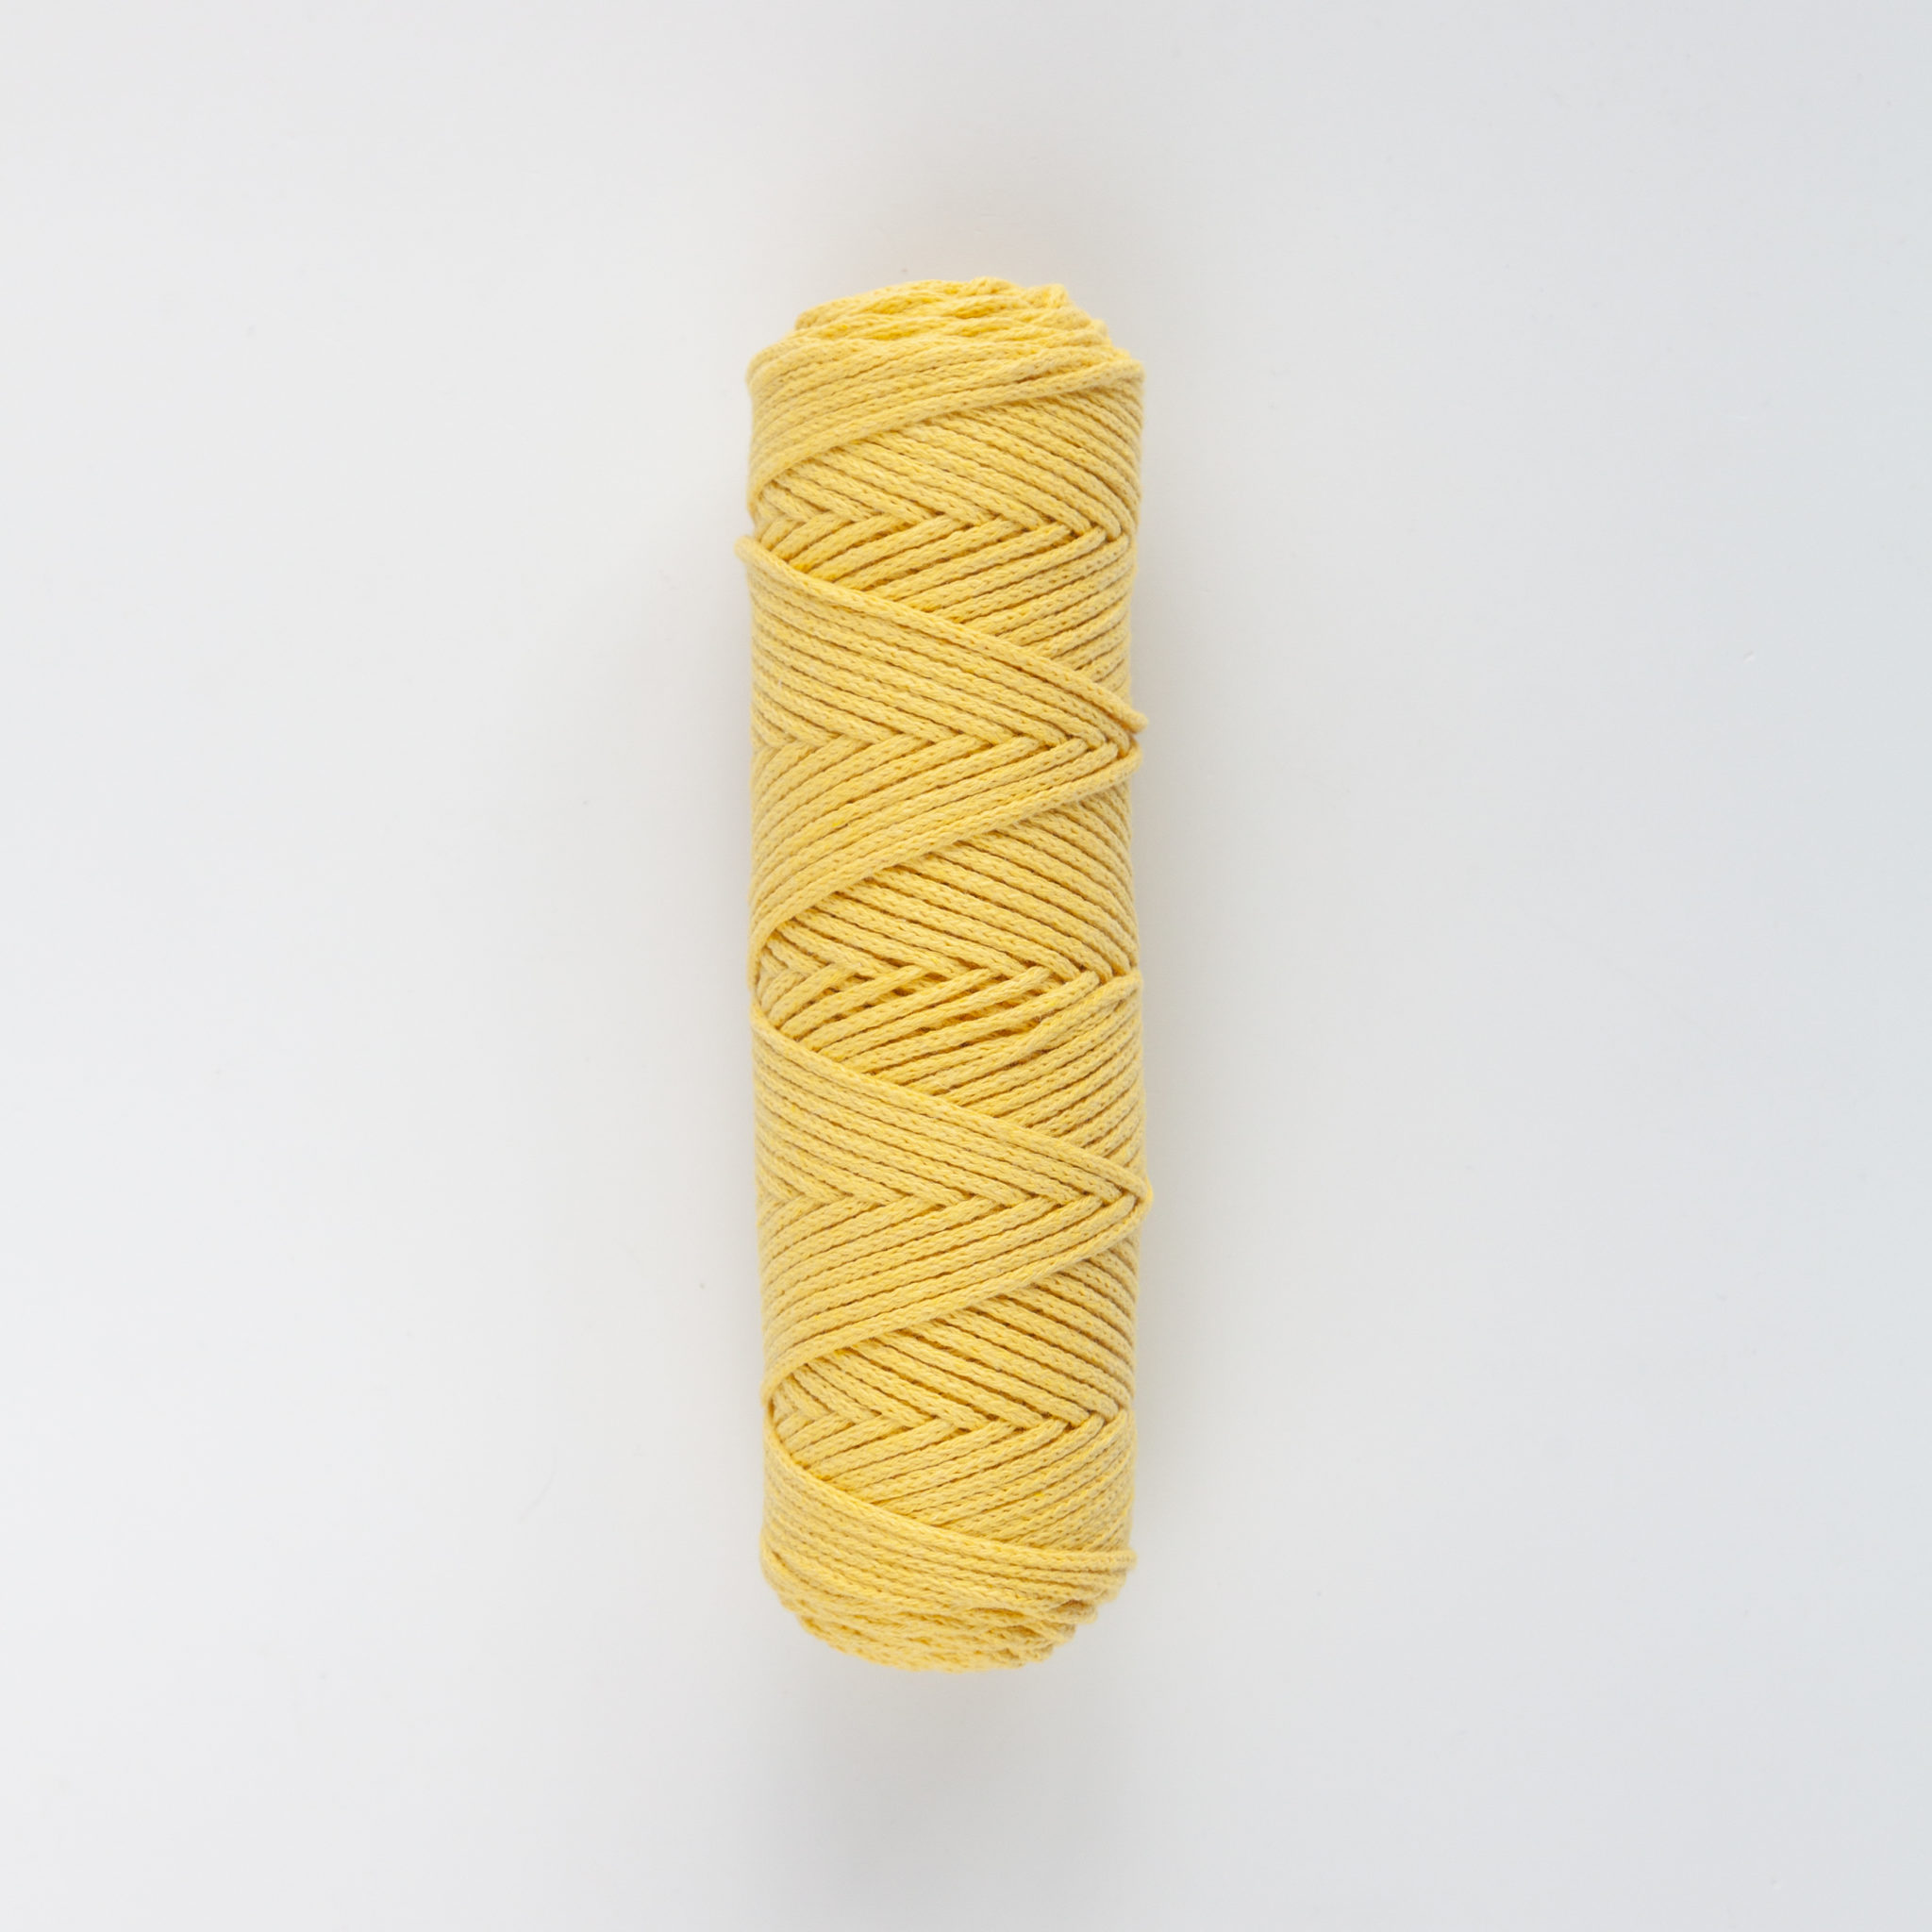 Шнур 3 мм жёлтый, 100 м - w.ALL.s, материалы для макраме и шитья